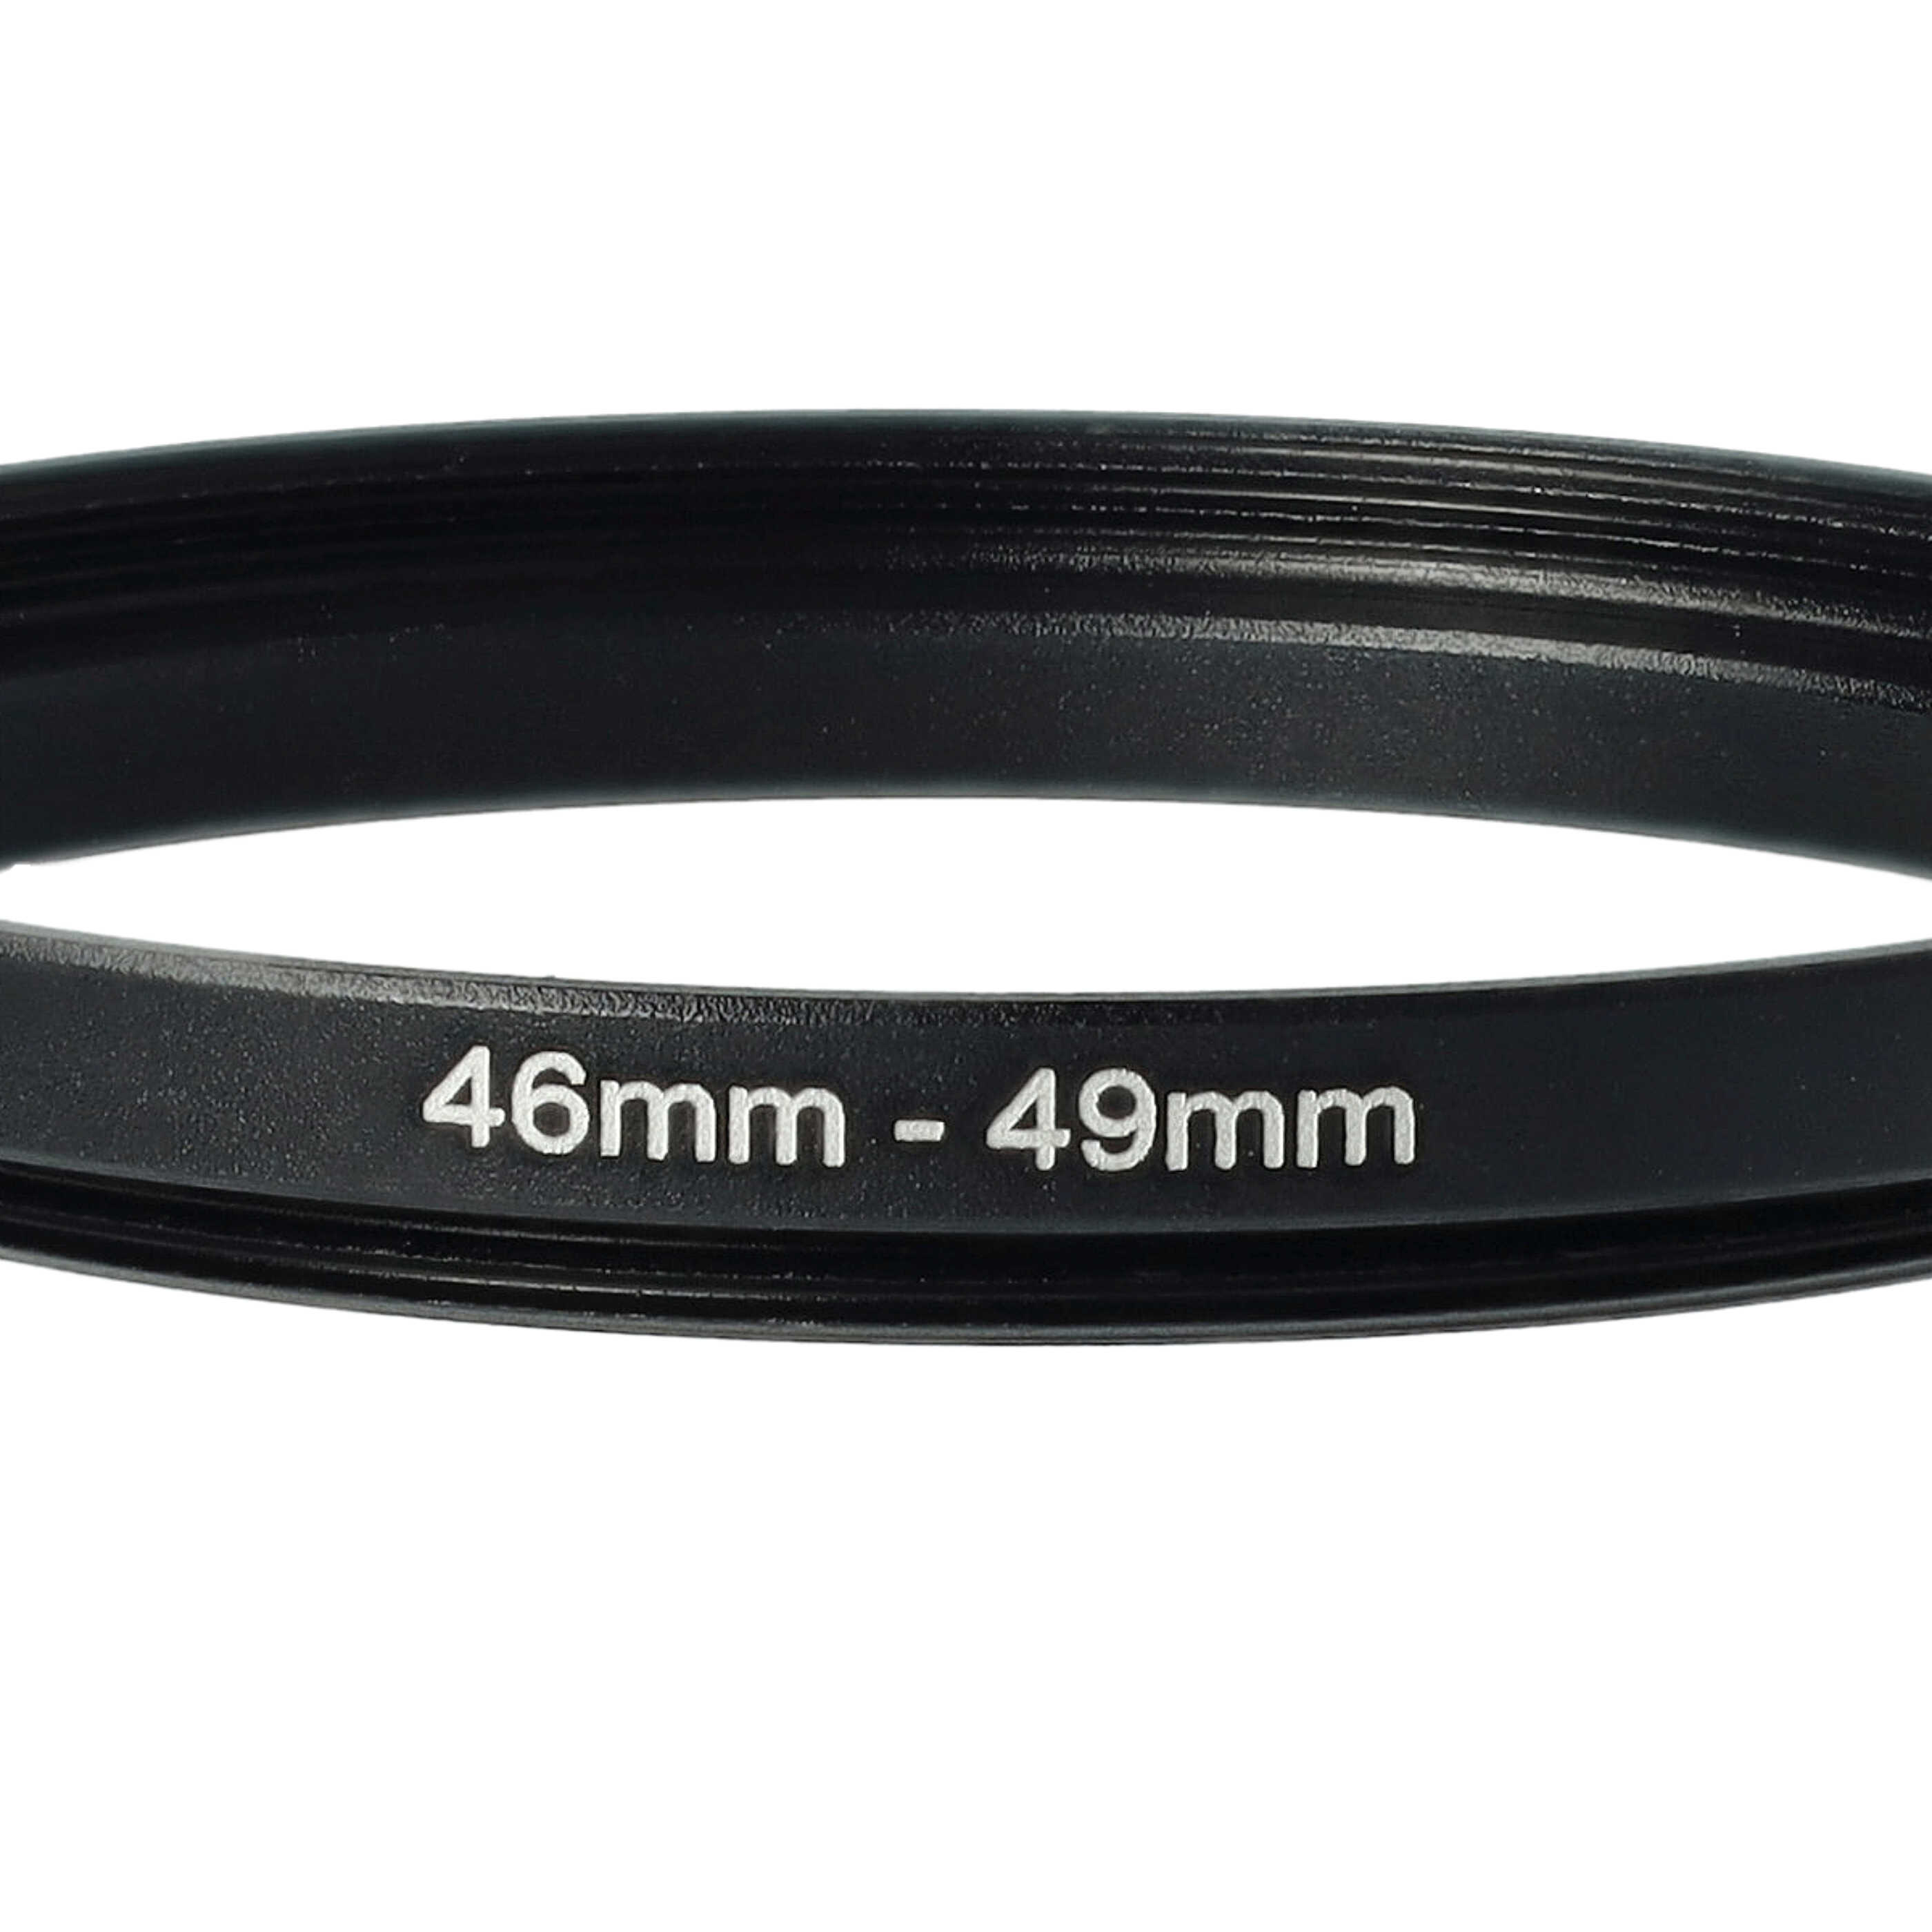 Redukcja filtrowa adapter 46 mm na 49 mm na różne obiektywy 